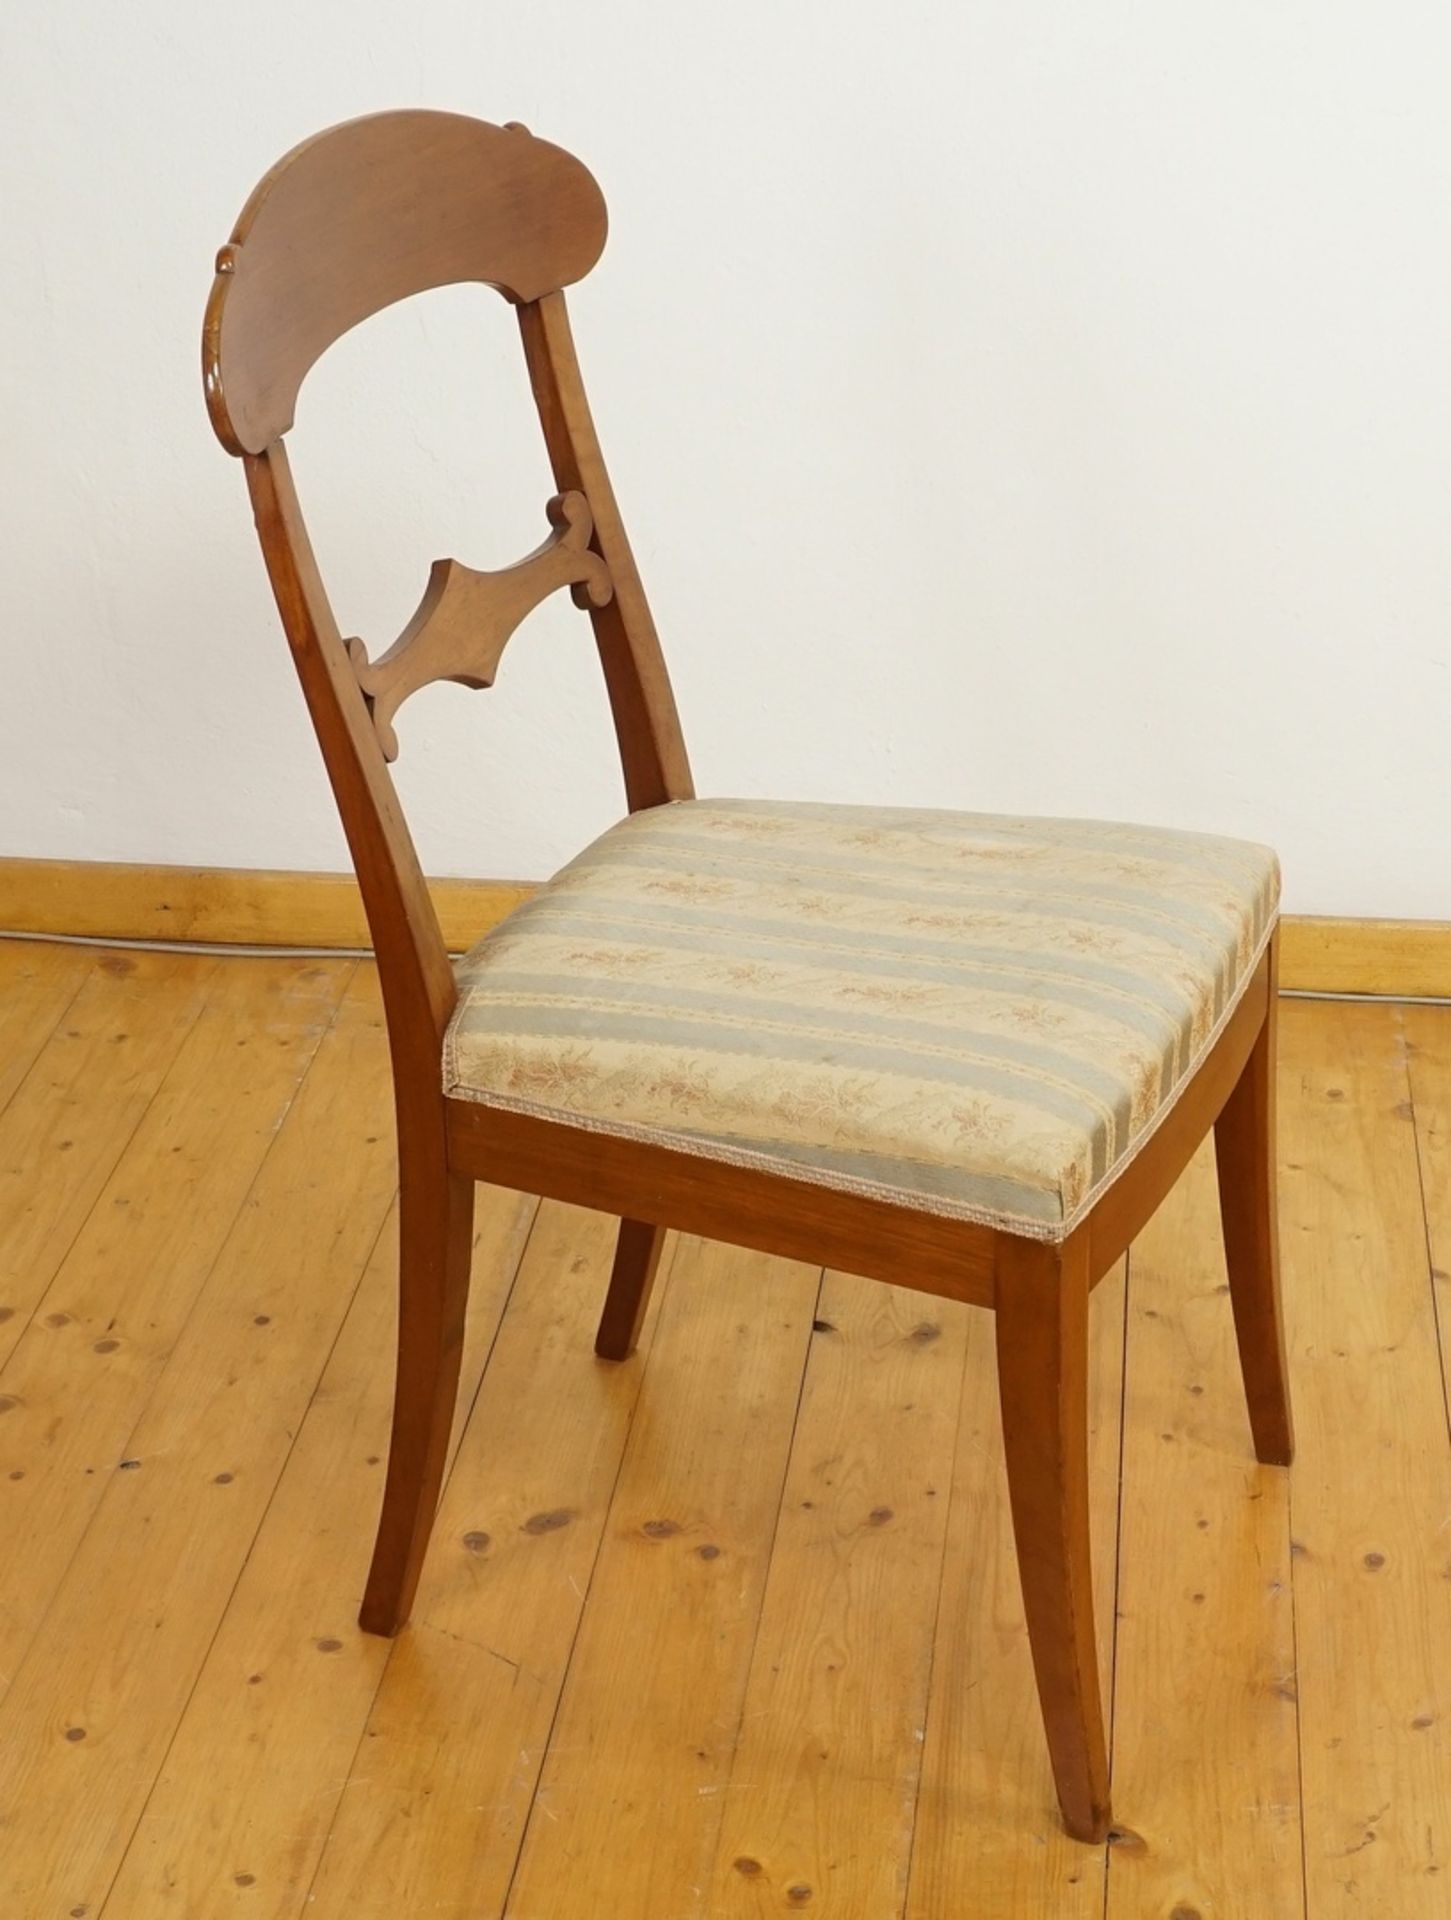 Zwei Stühle im Biedermeierstil, Nussbaum - Image 2 of 5